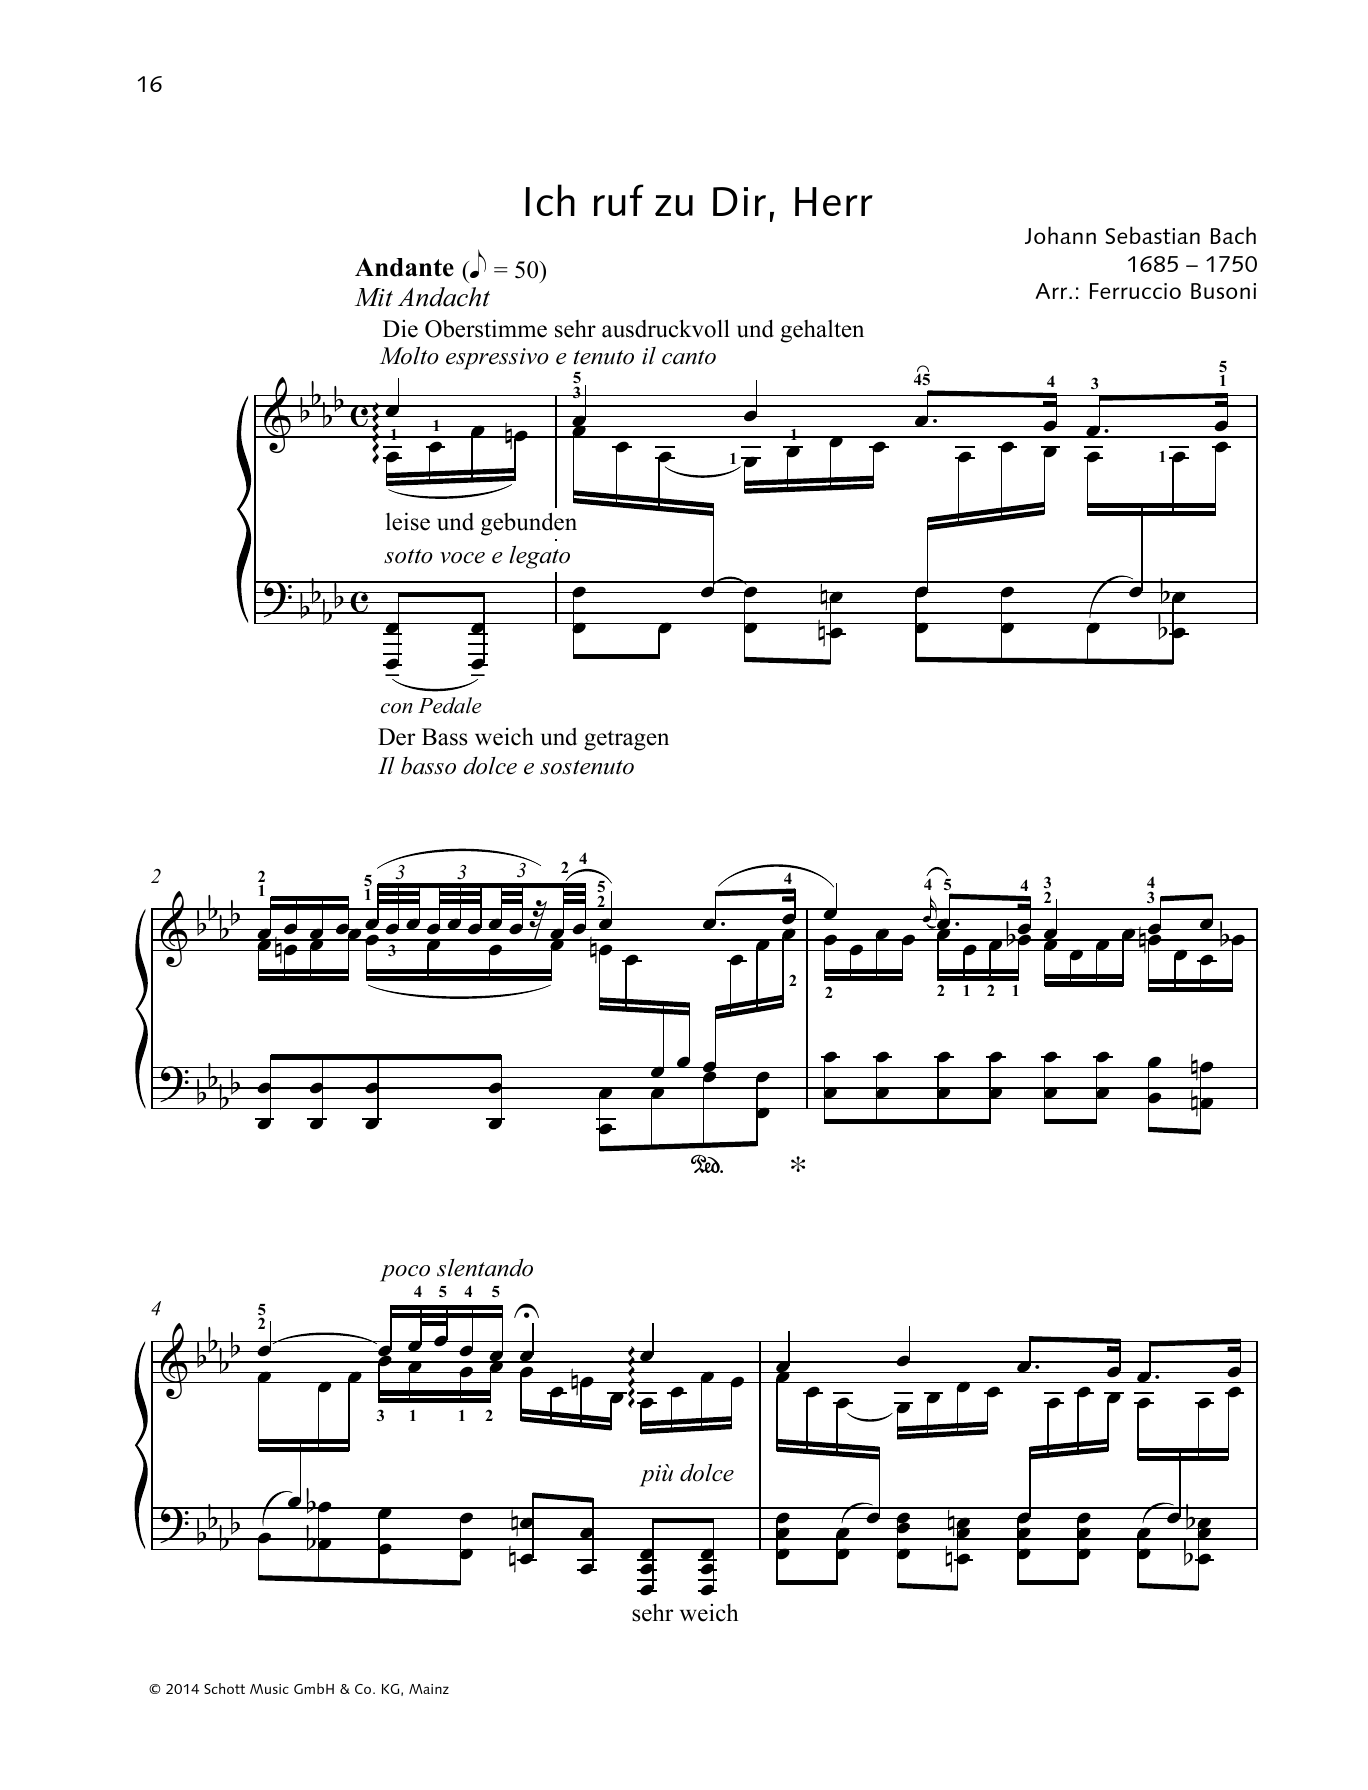 Johann Sebastian Bach Ich ruf zu Dir, Herr Sheet Music Notes & Chords for Piano Solo - Download or Print PDF